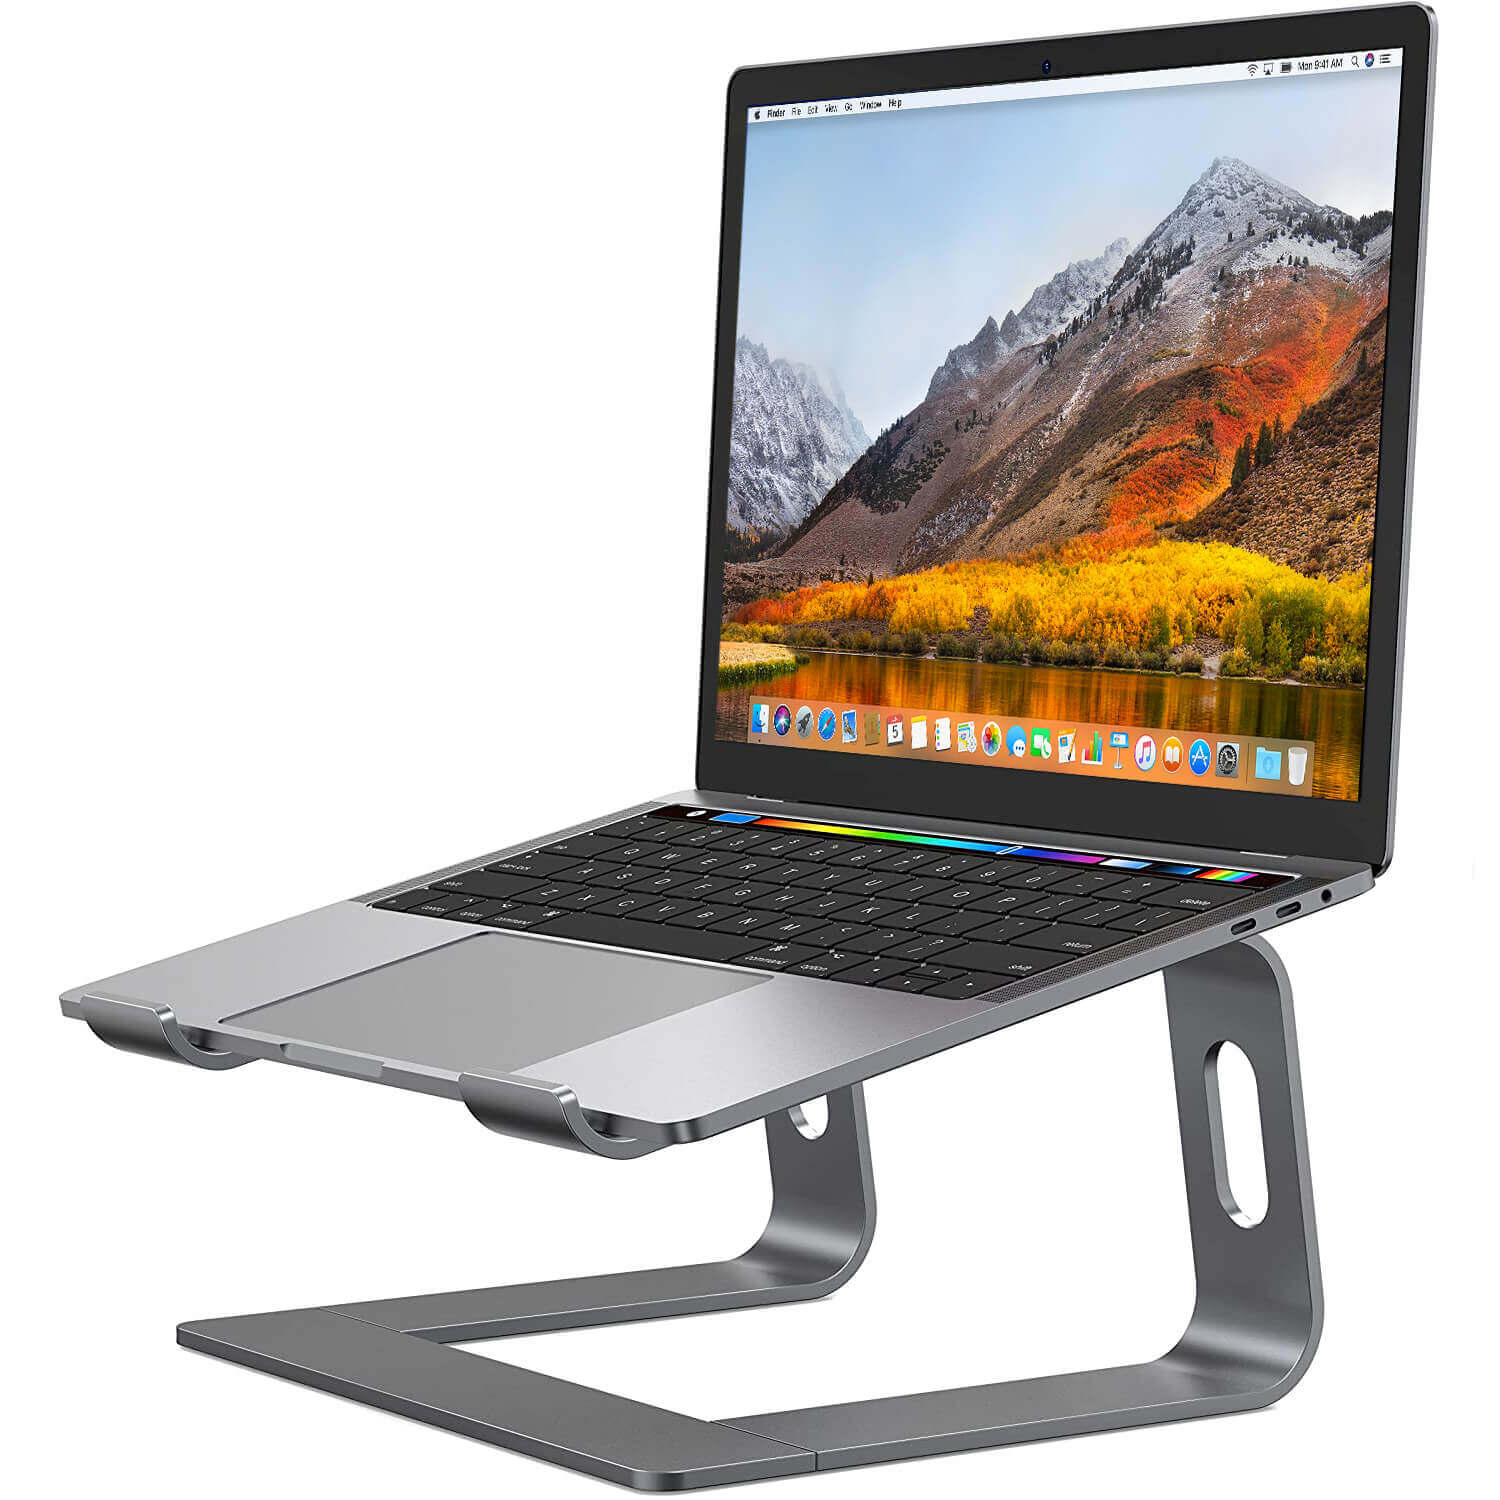 An Apple Macbook Pro on a very well built aluminium laptop stand